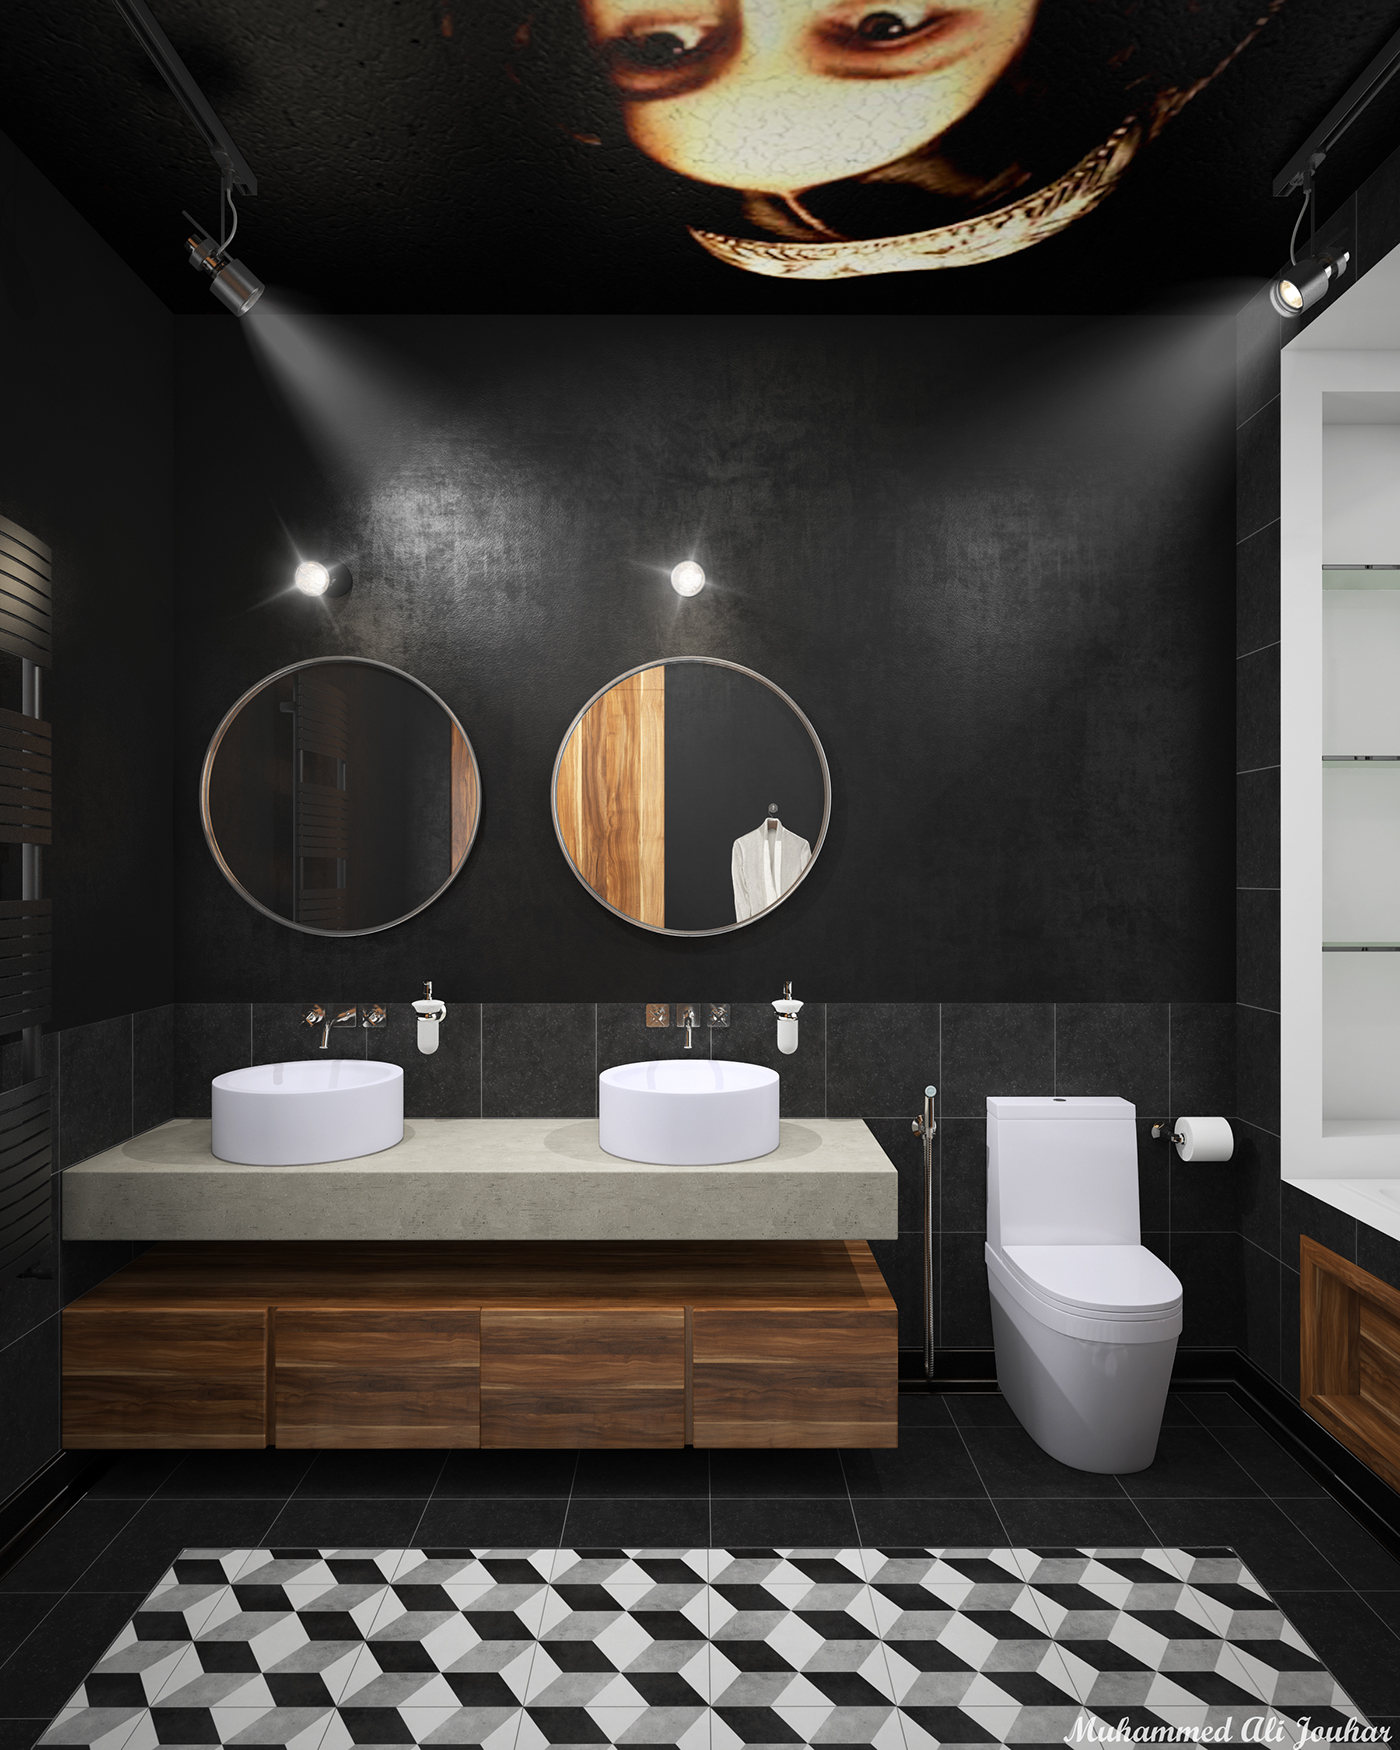 bathroom design black bathroom bathroom interior